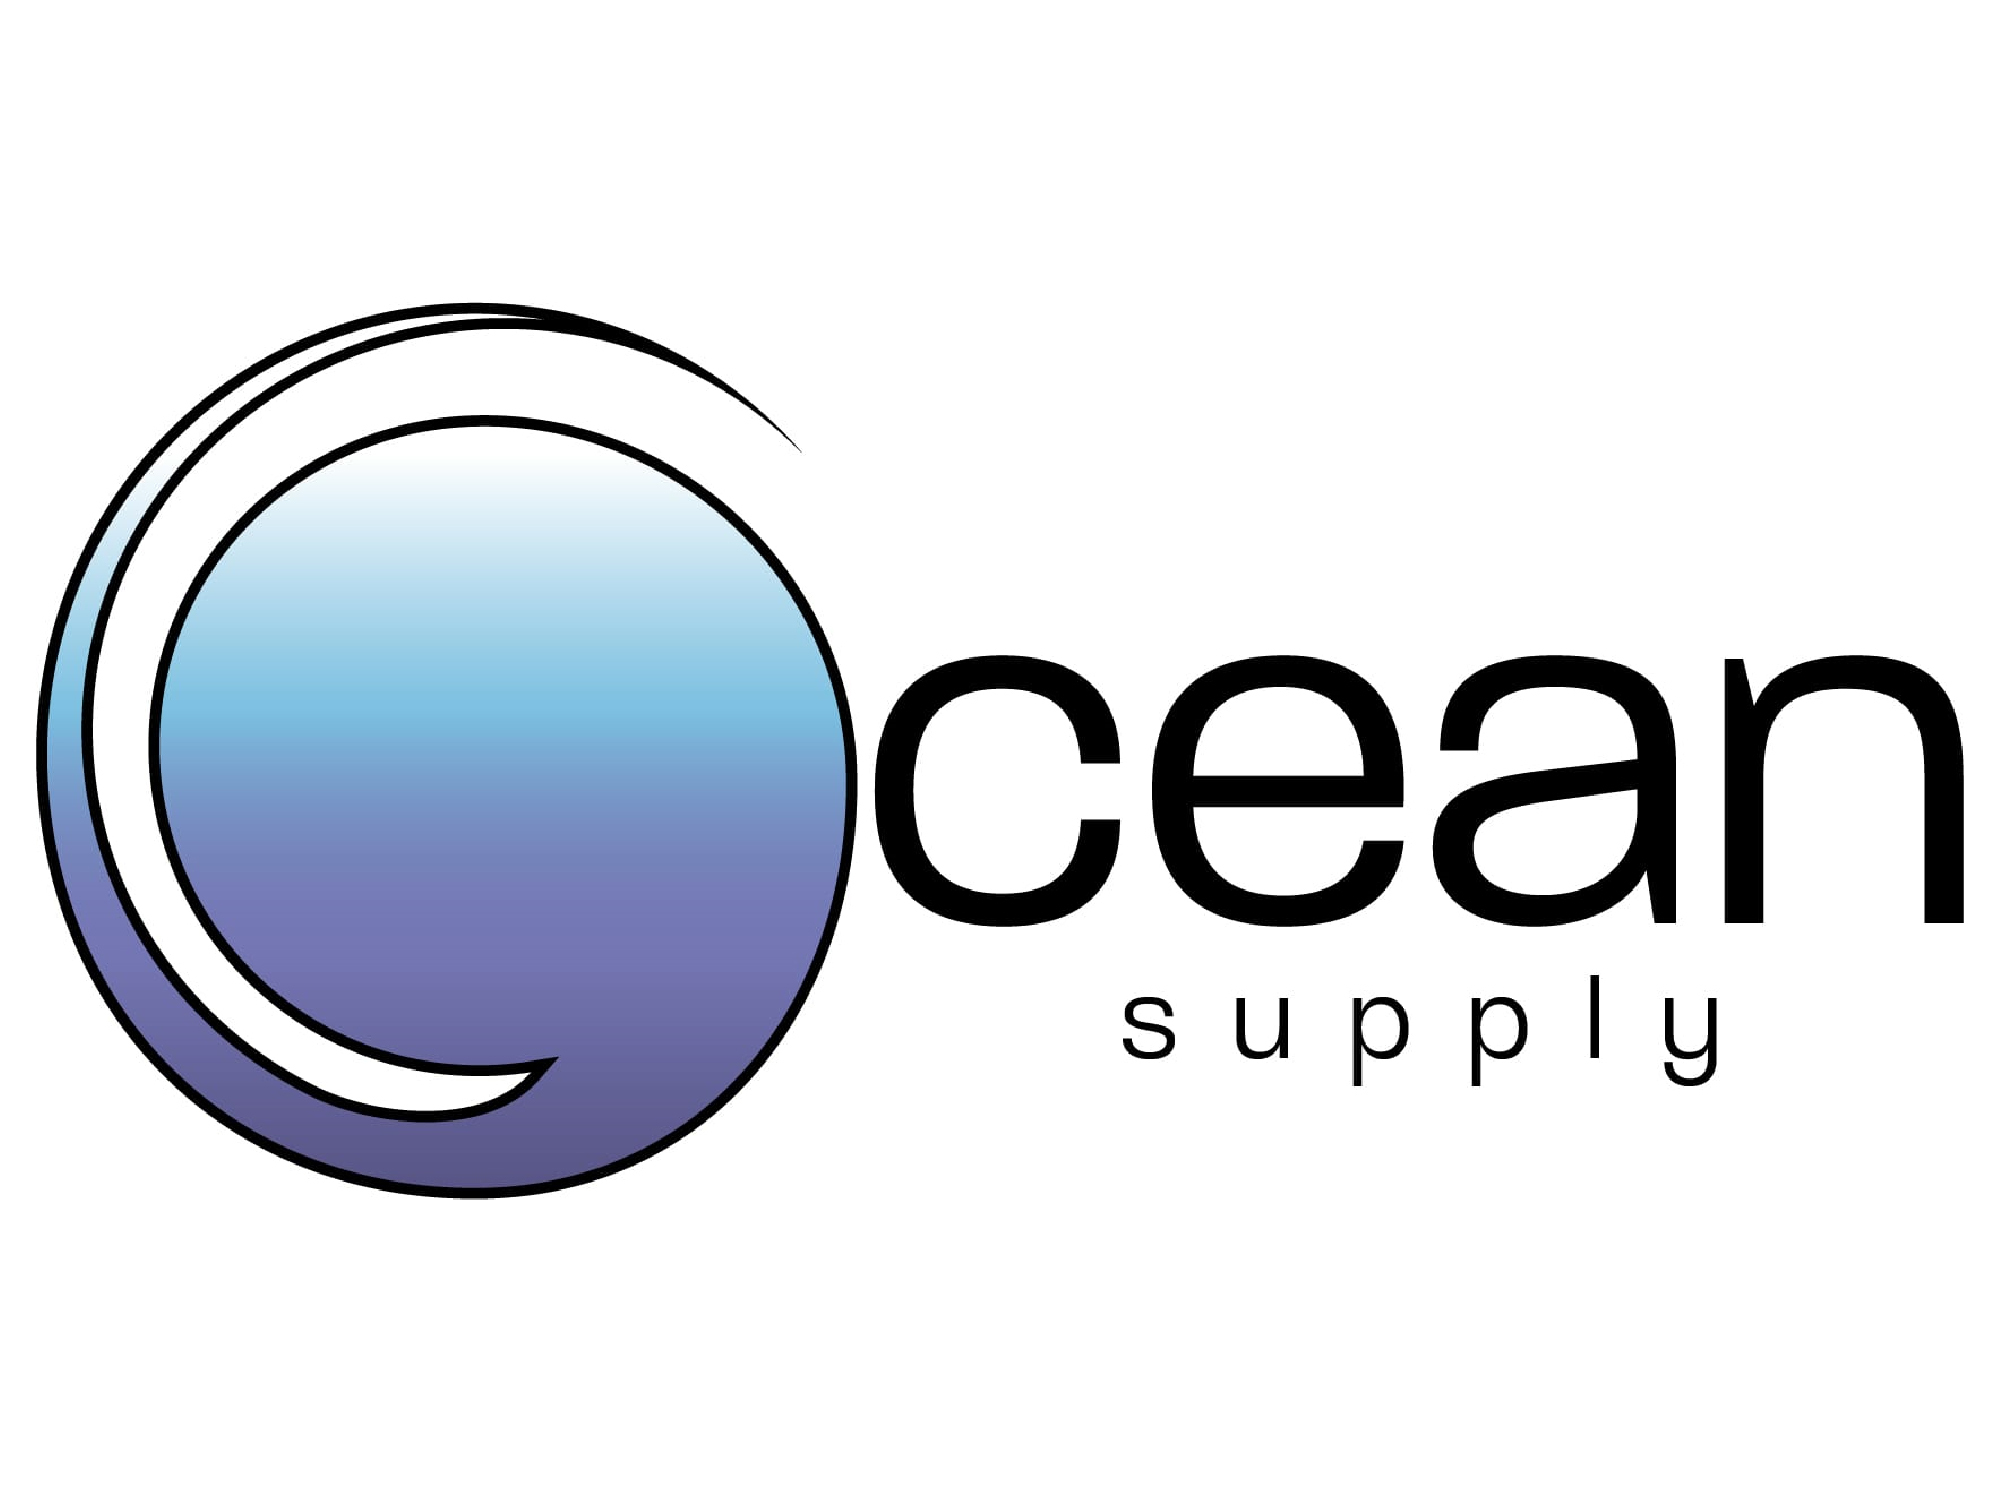 Ocean Supply